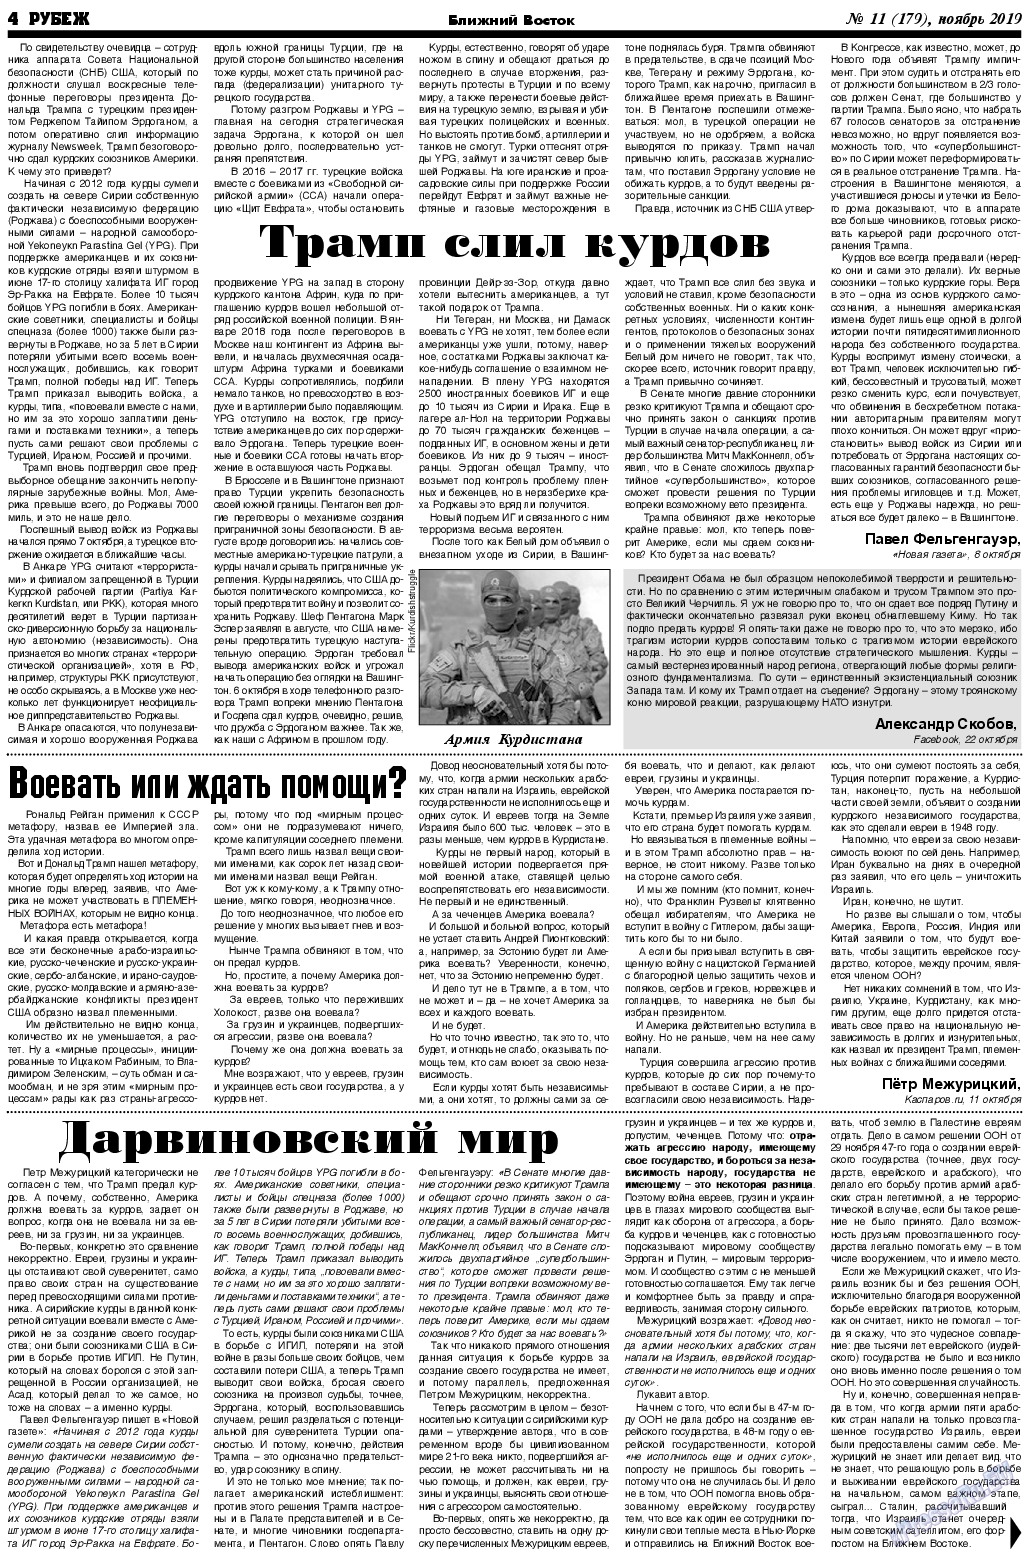 Рубеж (газета). 2019 год, номер 11, стр. 4